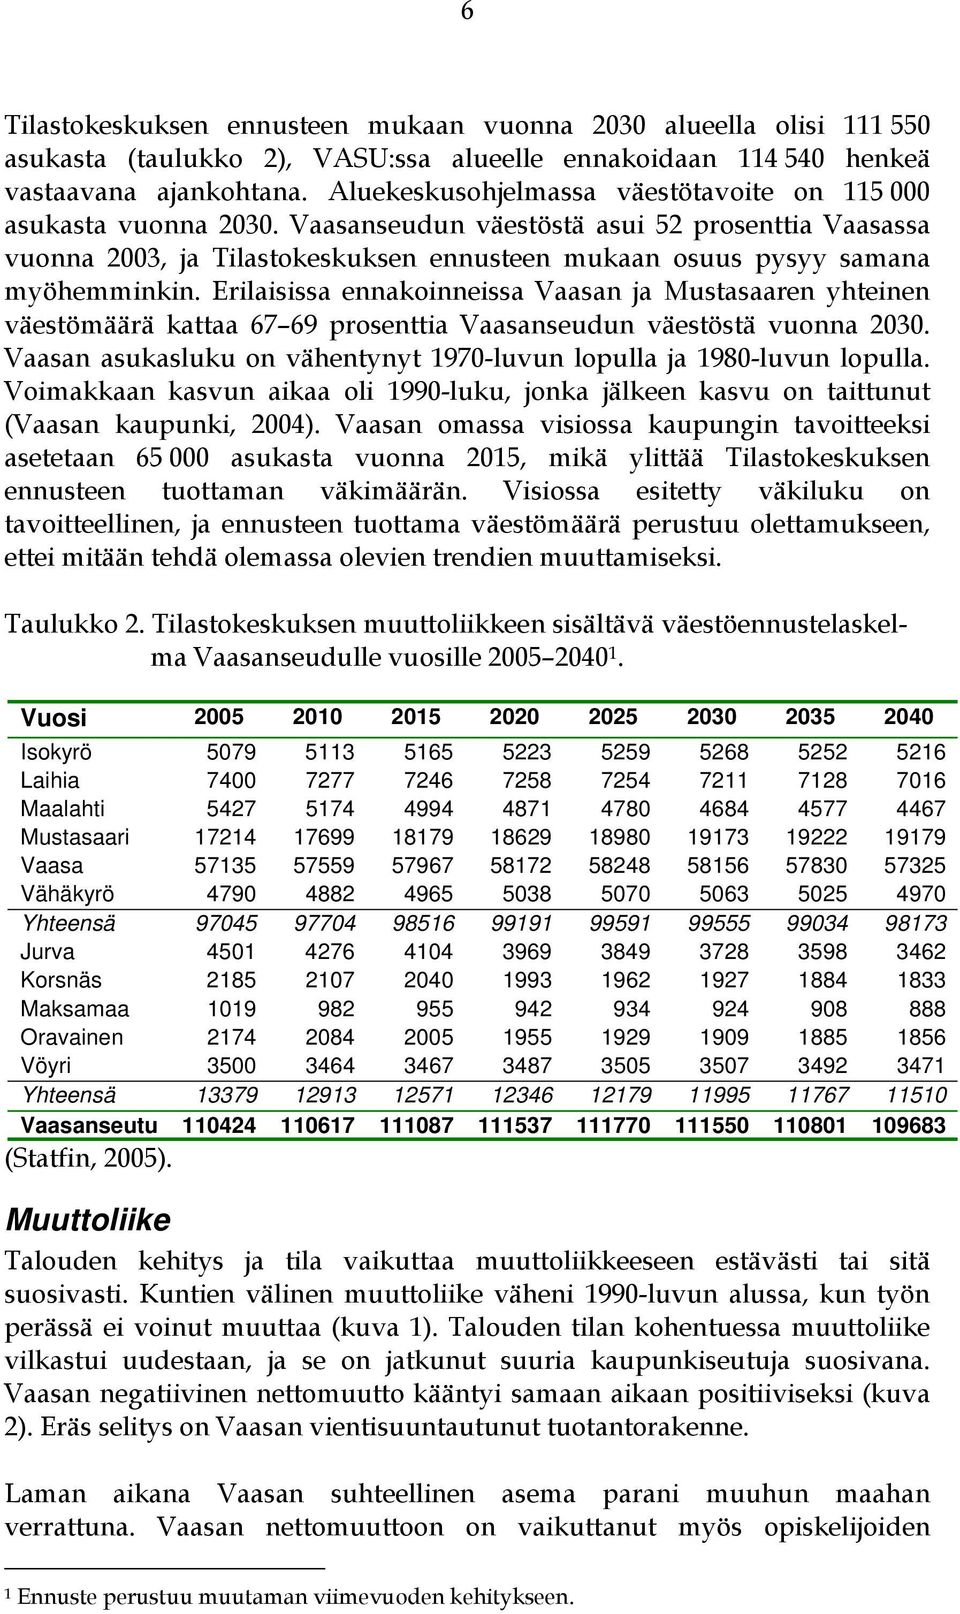 Vaasanseudun väestöstä asui 52 prosenttia Vaasassa vuonna 2003, ja Tilastokeskuksen ennusteen mukaan osuus pysyy samana myöhemminkin.